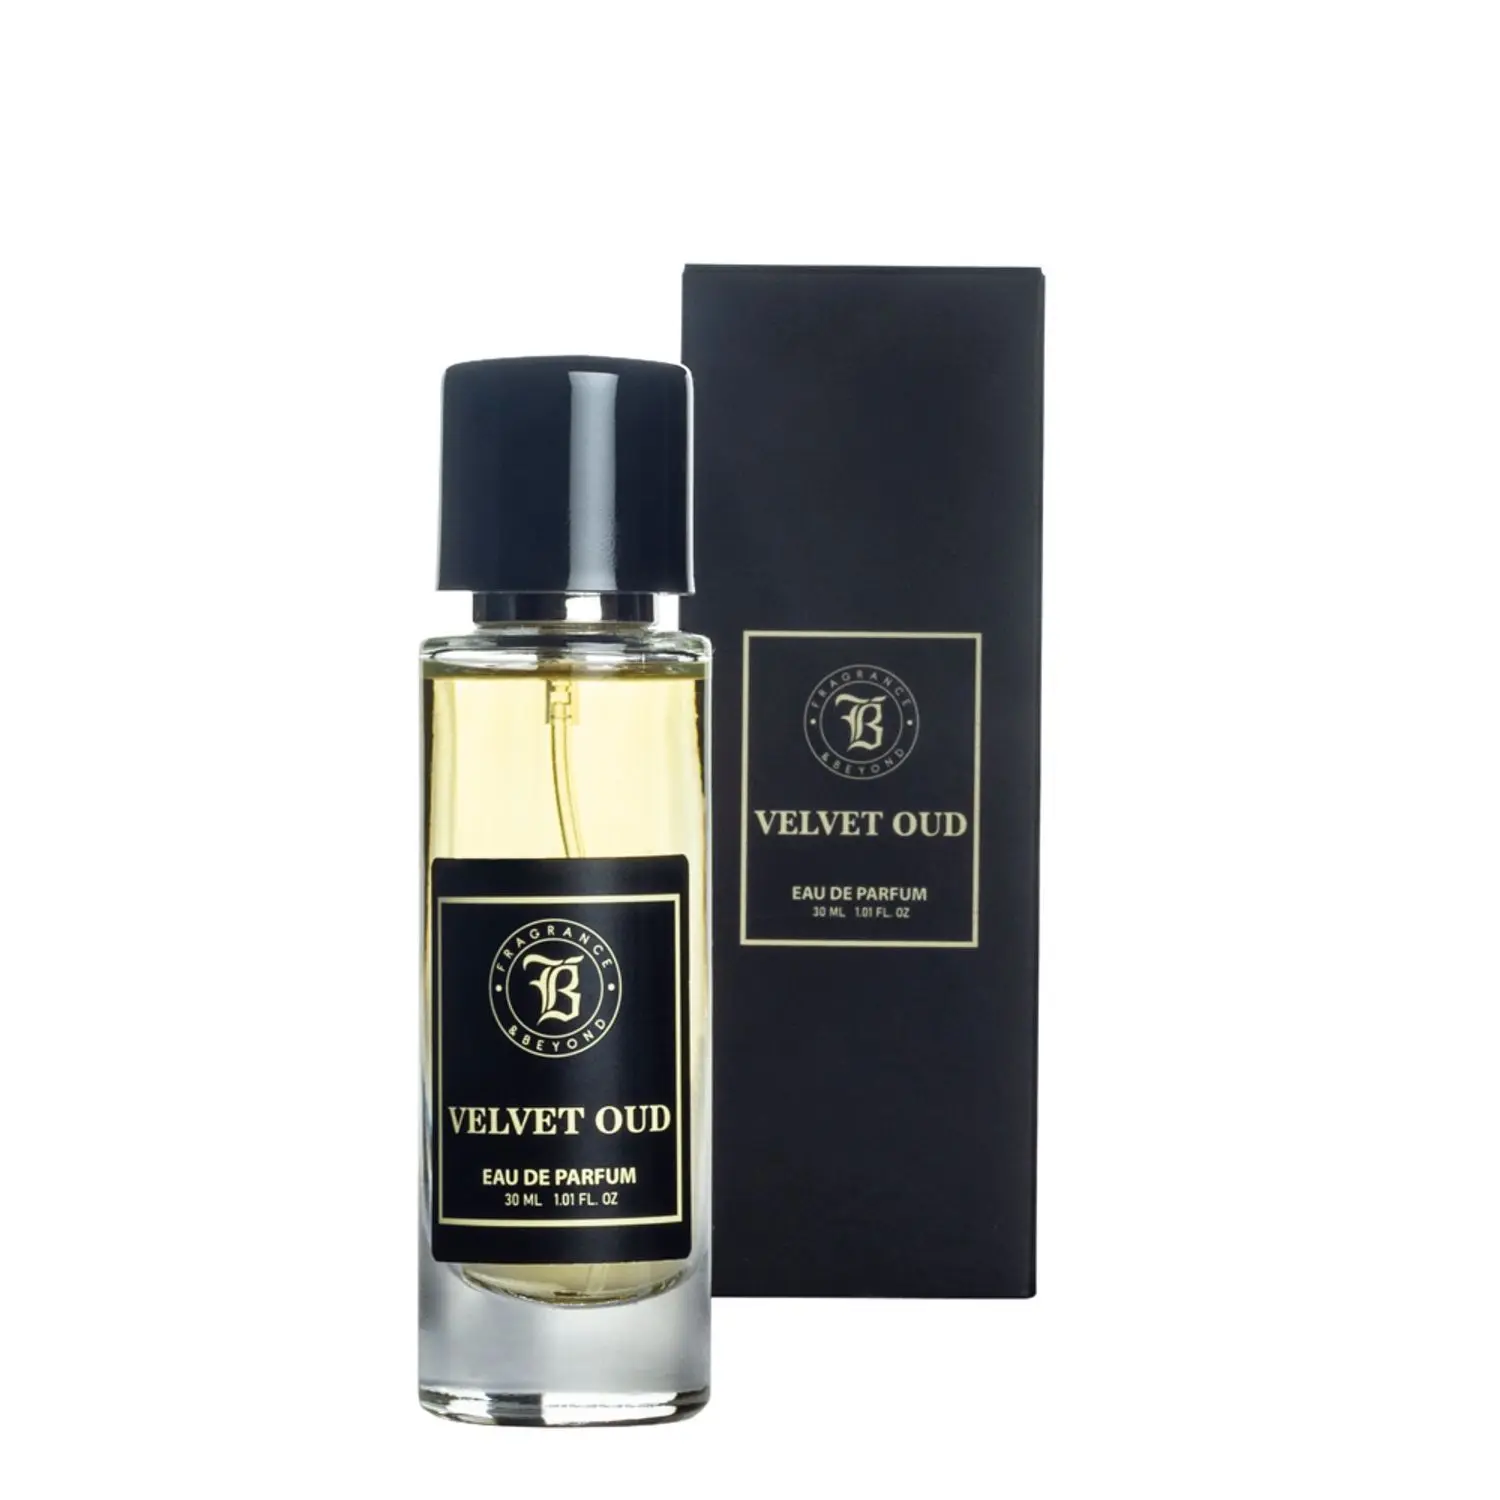 Fragrance & Beyond Velvet Oud, Eau De Parfum (Perfume) for Men - 30ML | Long Lasting Fragrance | Upto 300 Sprays |Made In India